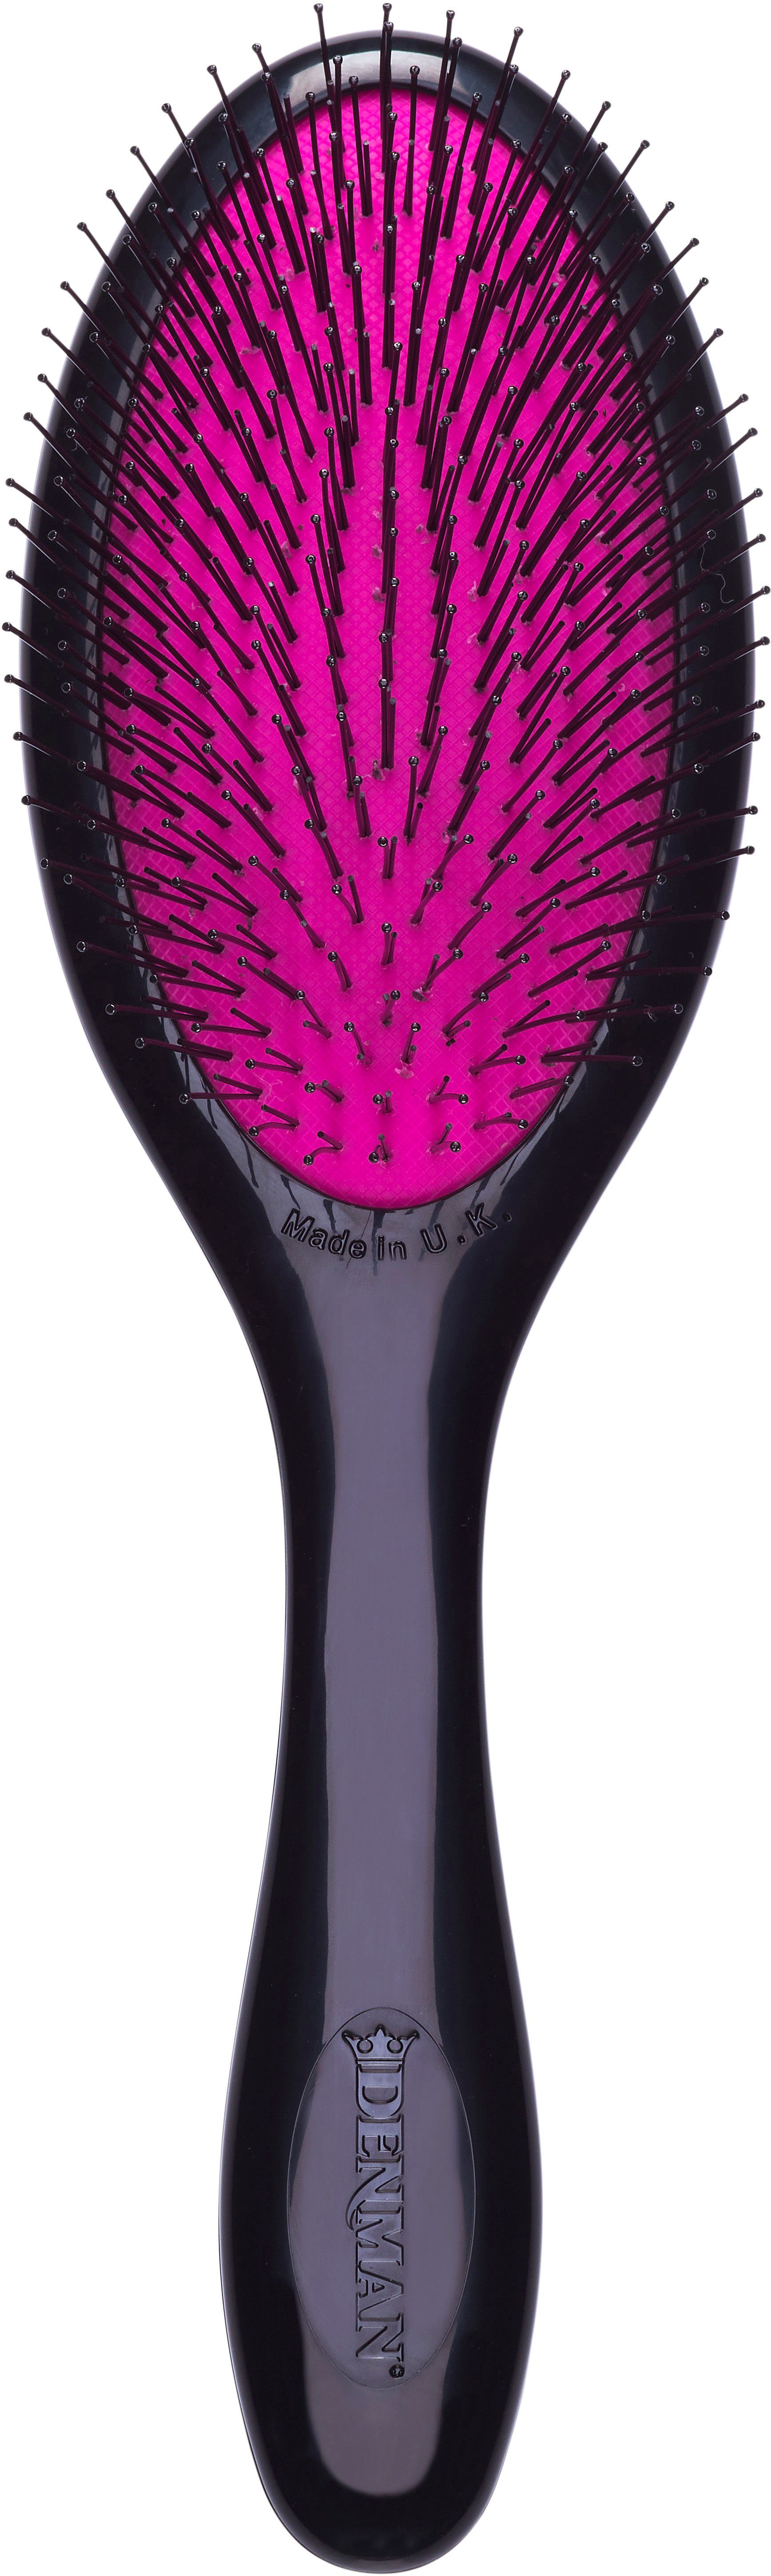 DENMAN Haarbürste für Kinderhaar schwarz-pink Tangle Entwirrungsbürste feines D93M Haar Tamer Gentle, speziell und